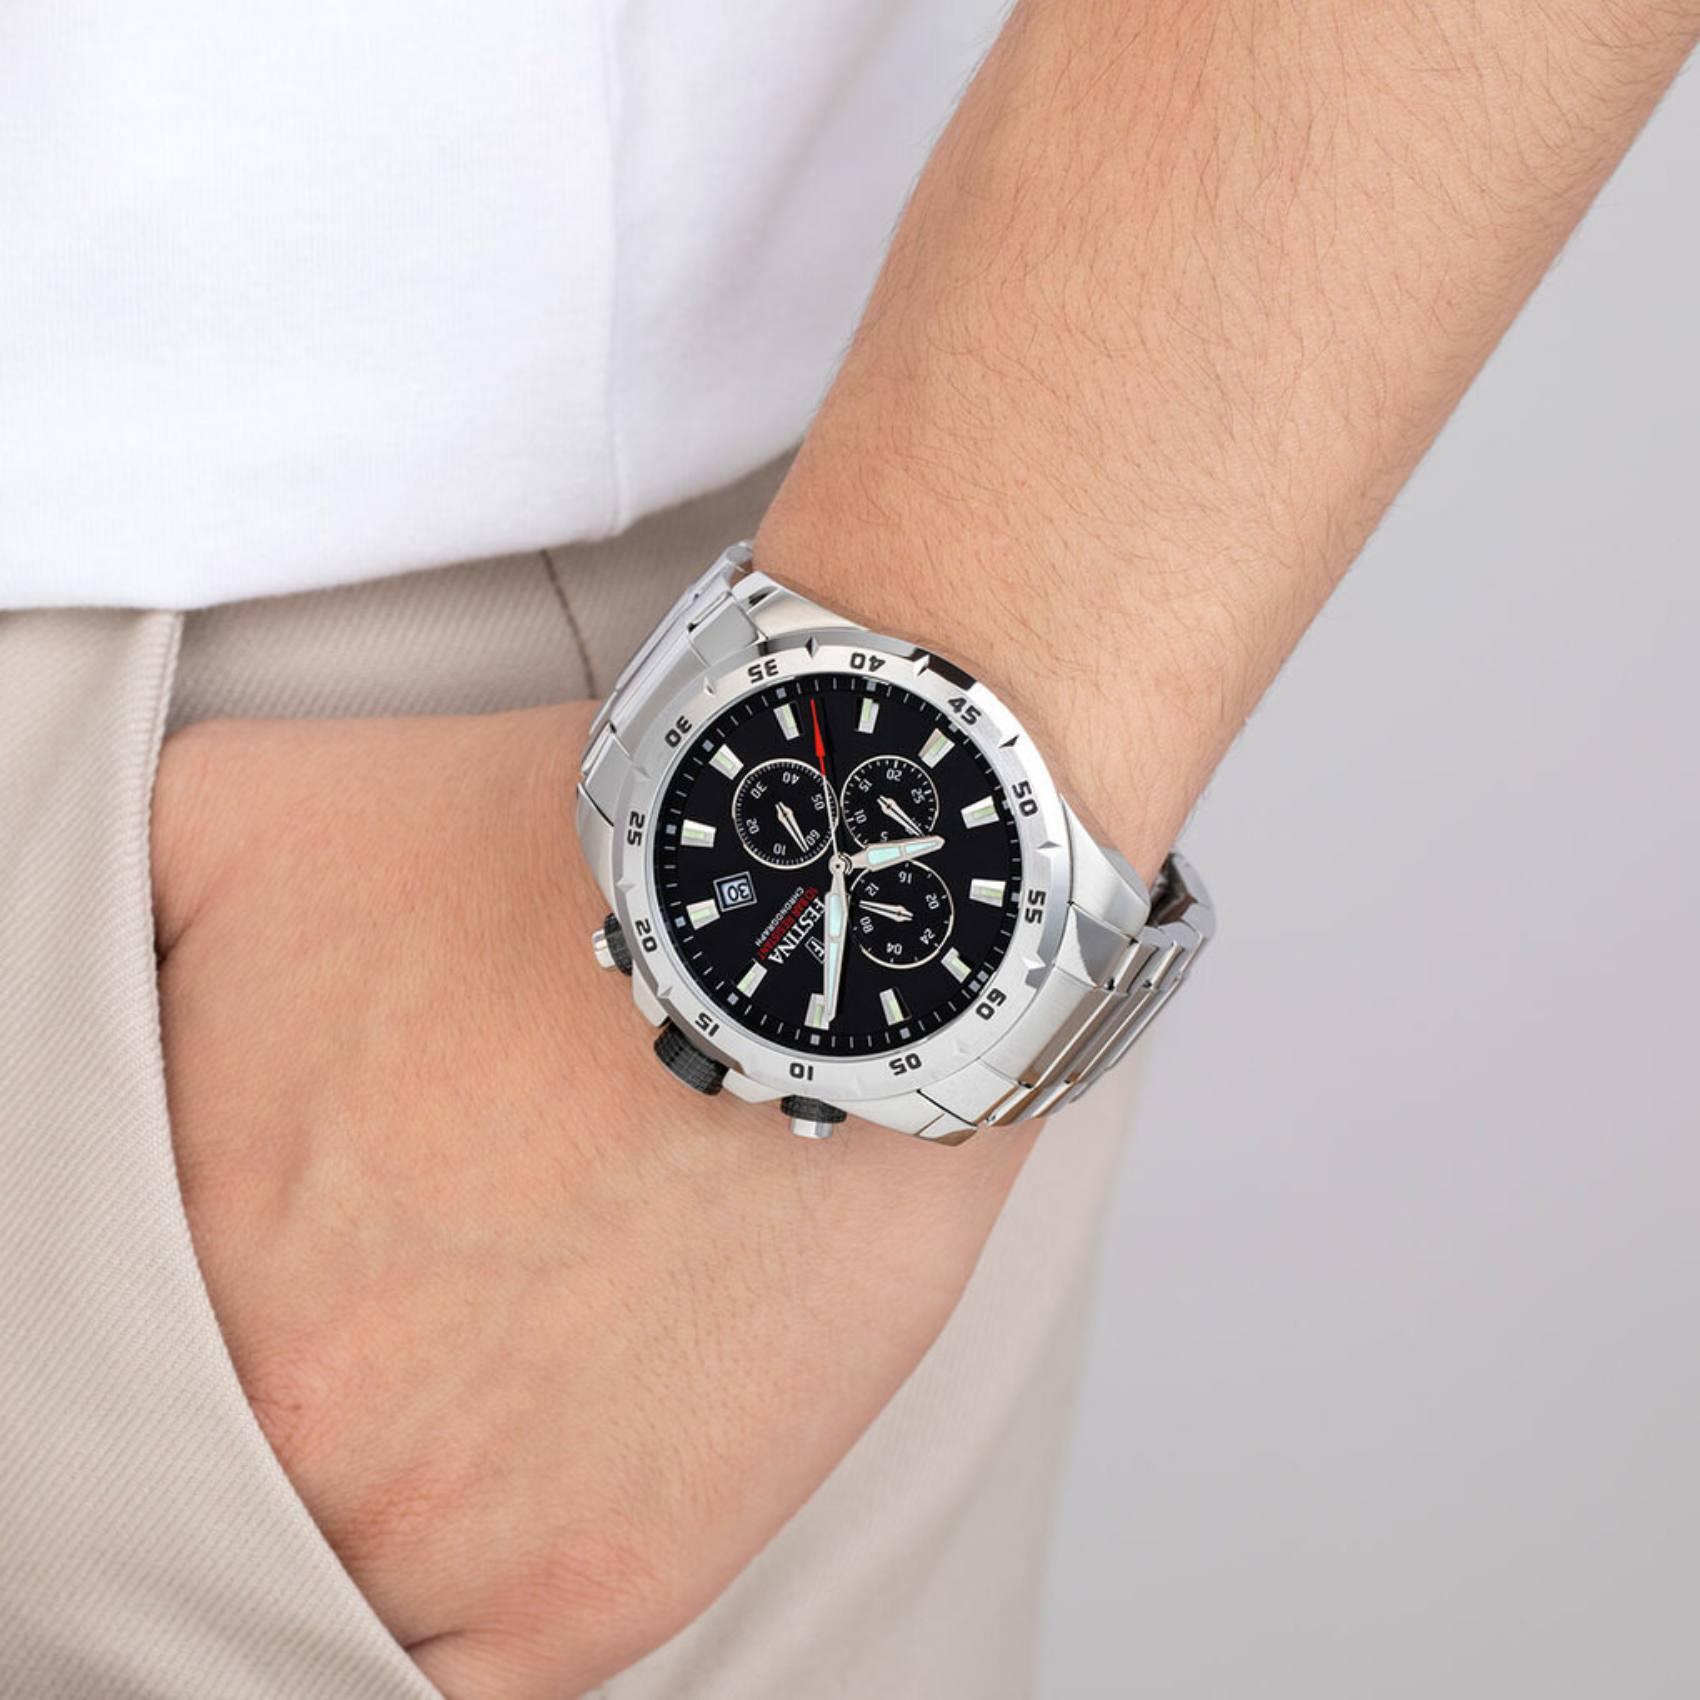 Αδιάβροχο ρολόι Festina F20623/4 με χρονογράφο, ασημί μπρασελέ, μαύρο καντράν με ένδειξη ημερομηνίας και στεφάνι διαμέτρου 44,7mm.